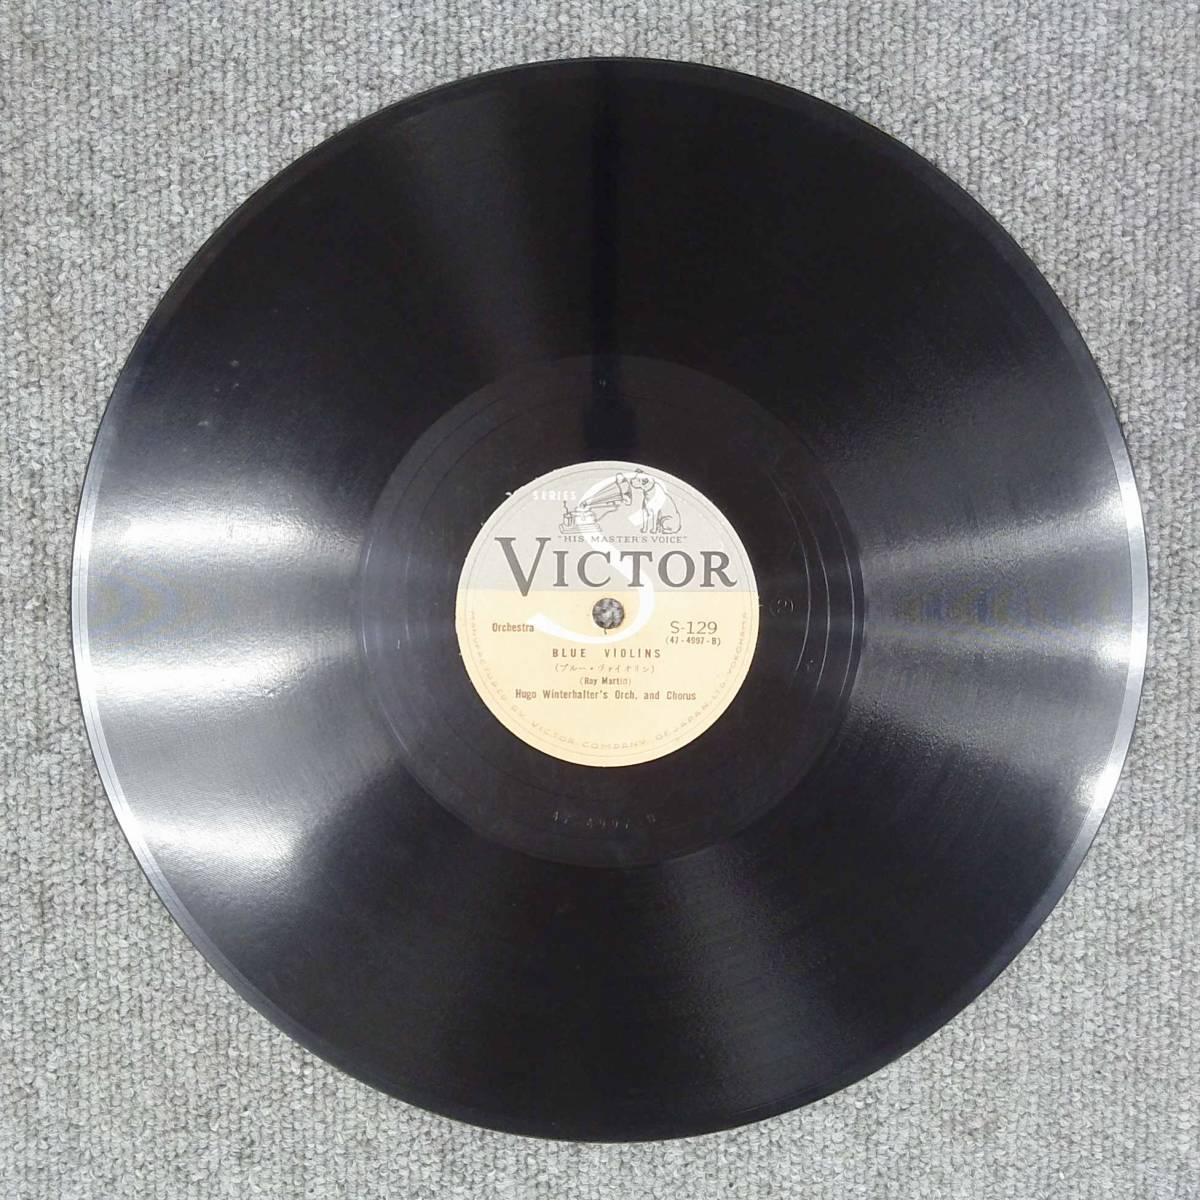 SP盤 レコード ユーゴー・ウインターハルター楽団 / ブルー・ヴァイオリン / 小さい靴作りの歌 S-129 ビクター ny72_画像4